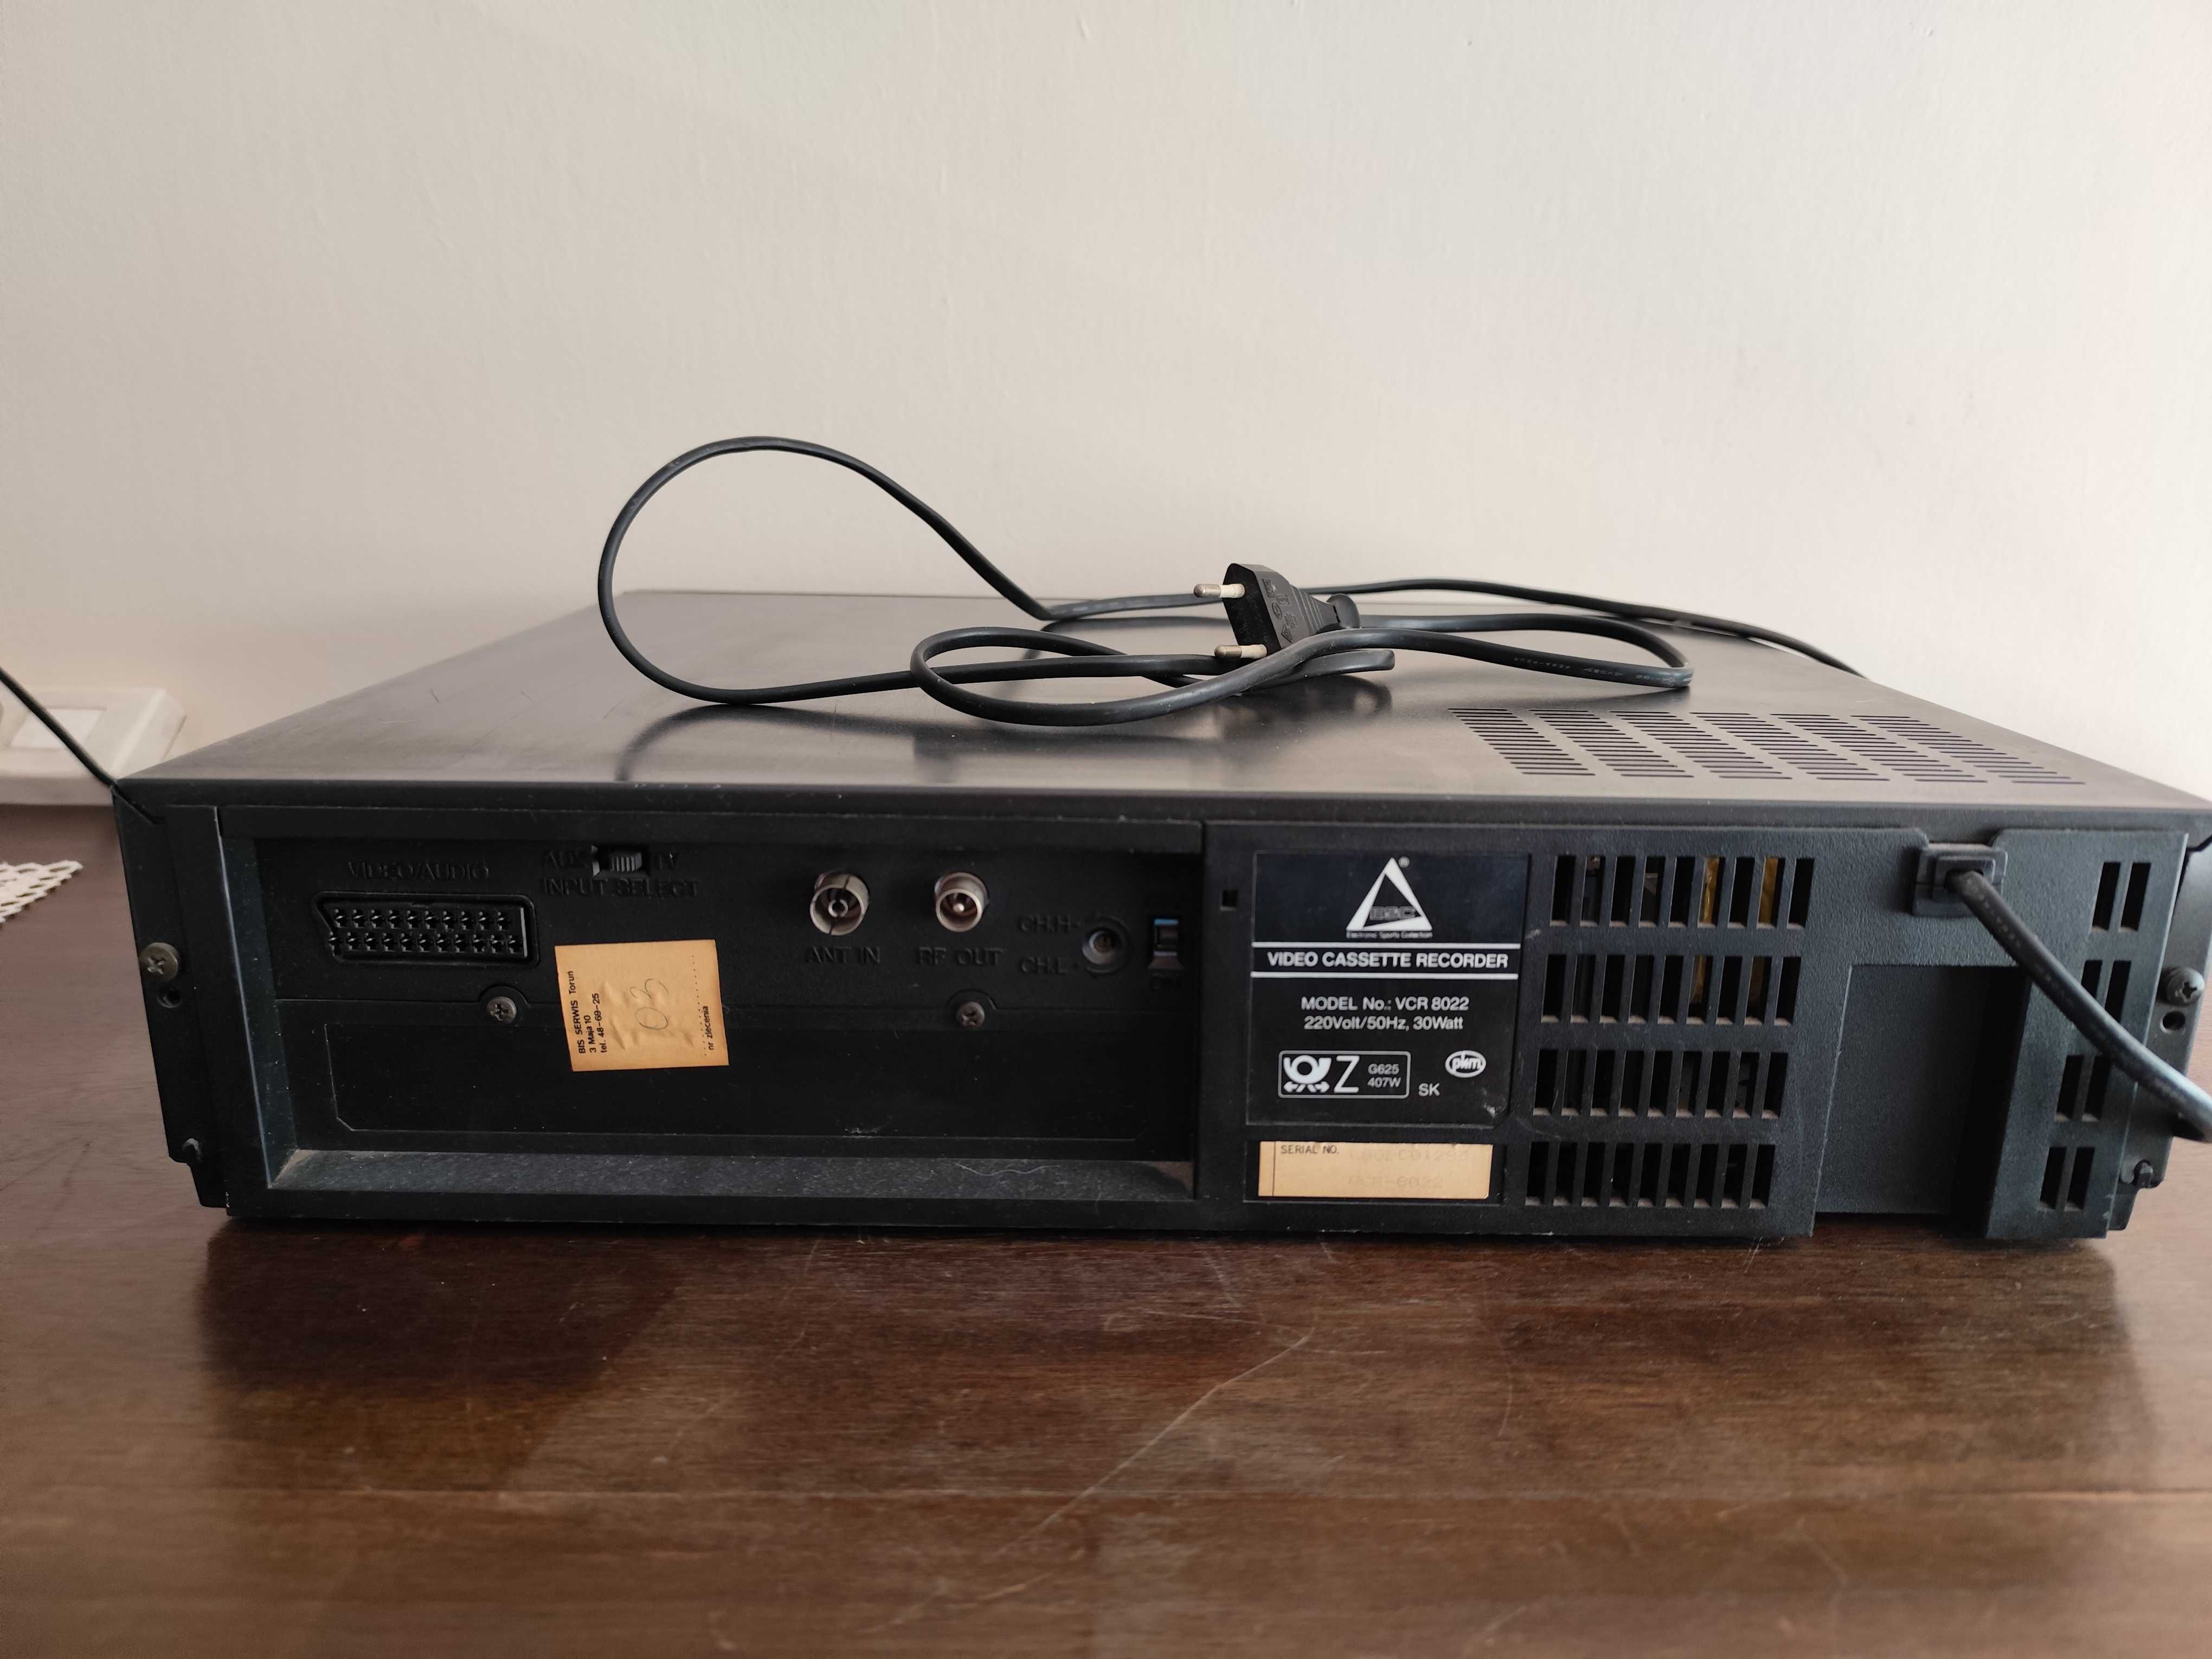 Magnetowid Video Cassette Recorder VCR-8022 ESC Condor? HVS